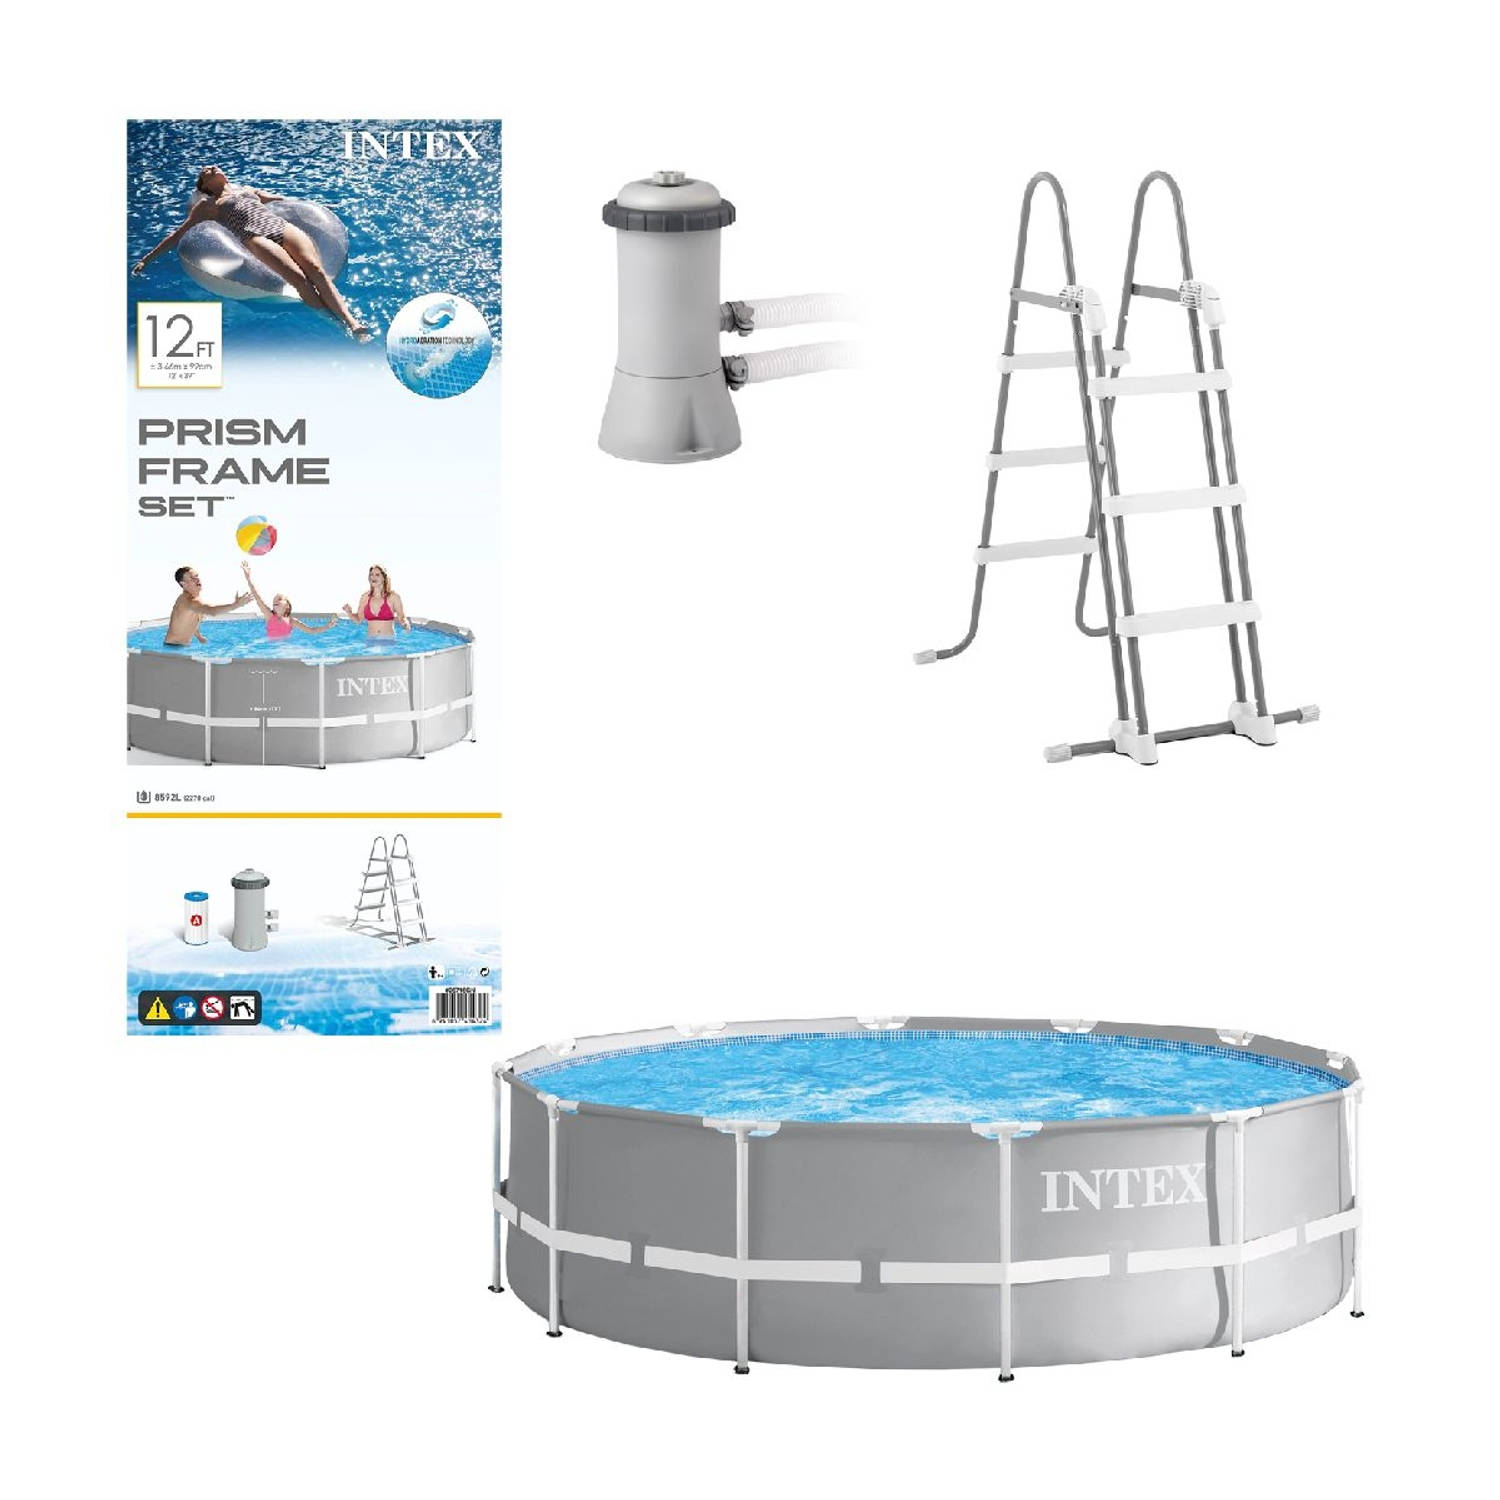 Intex opzetzwembad met filterpomp en ladder Prism Frame Ã366 x 99 cm grijs